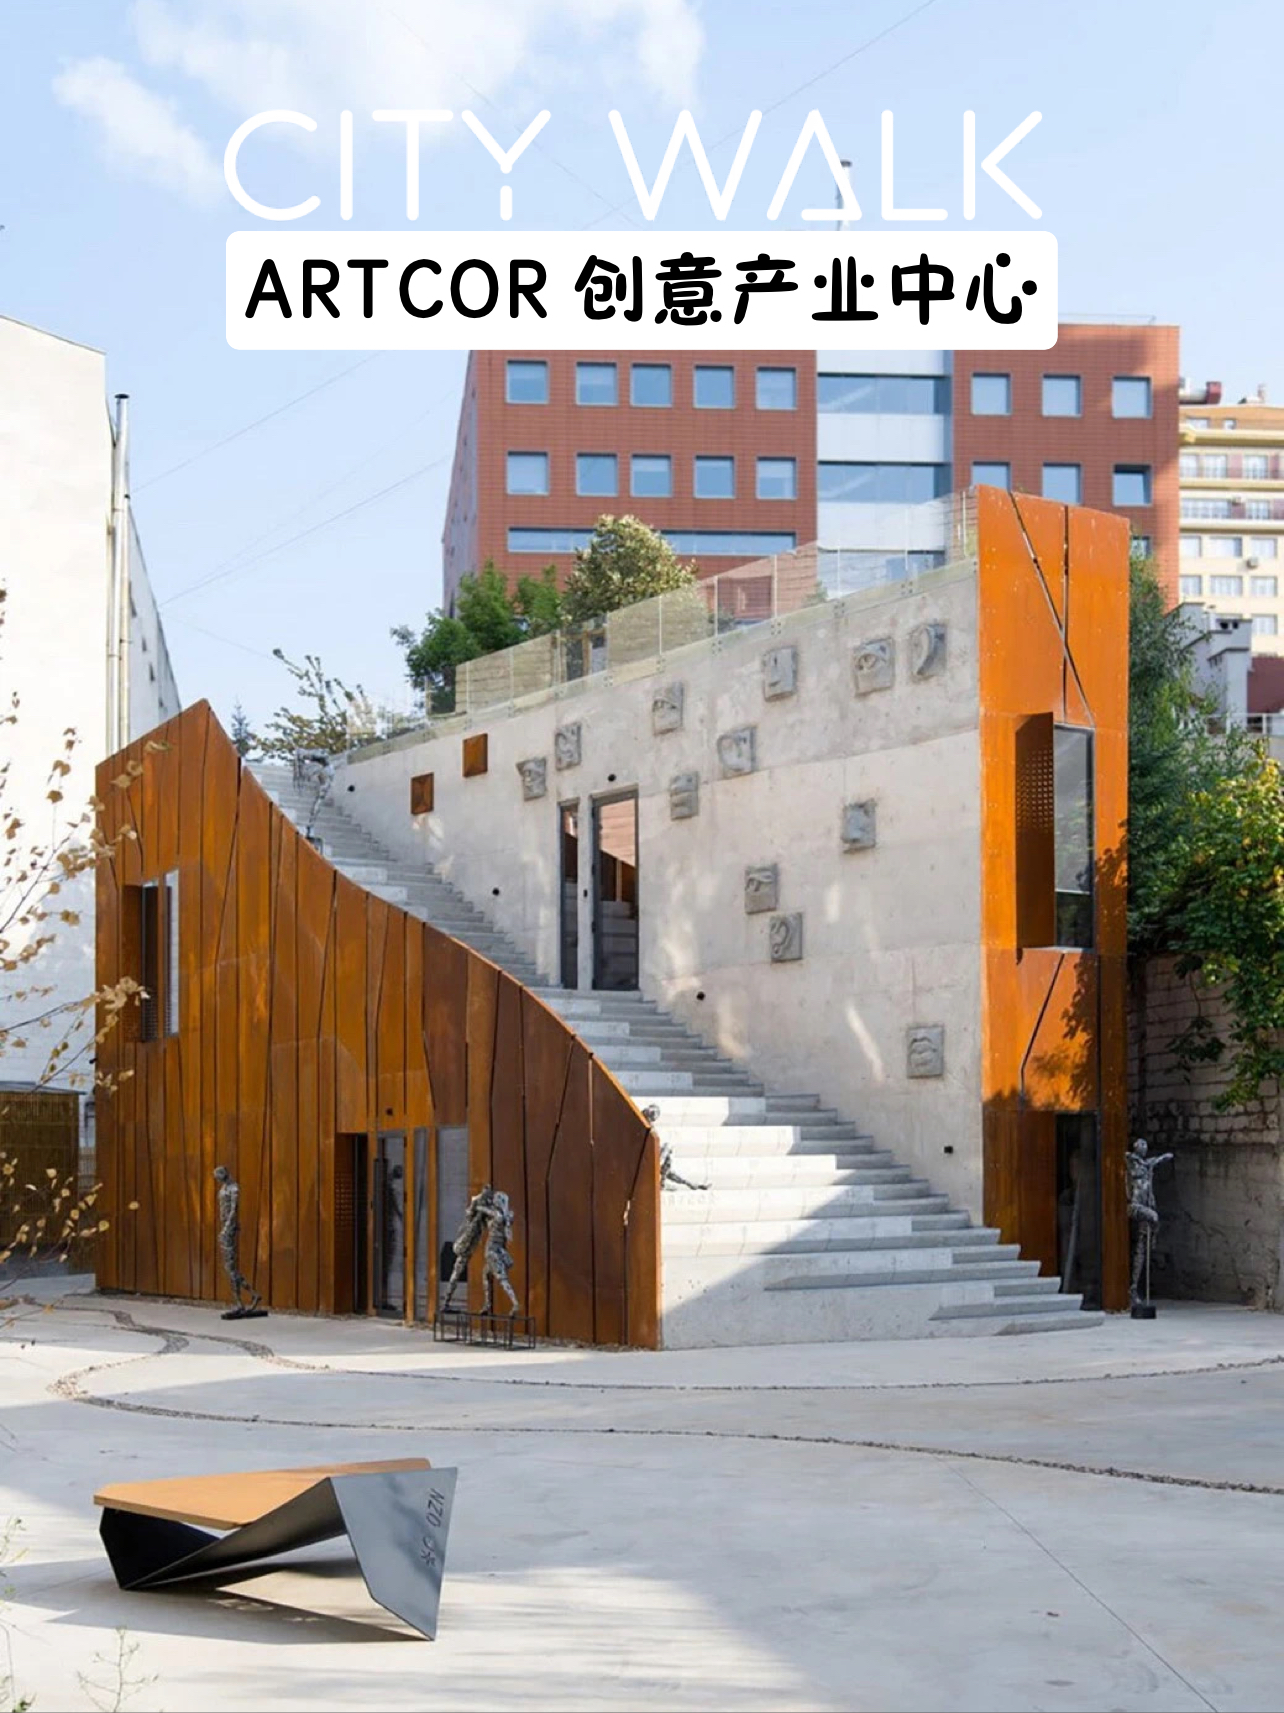 设计之美 | ARTCOR 创意产业中心